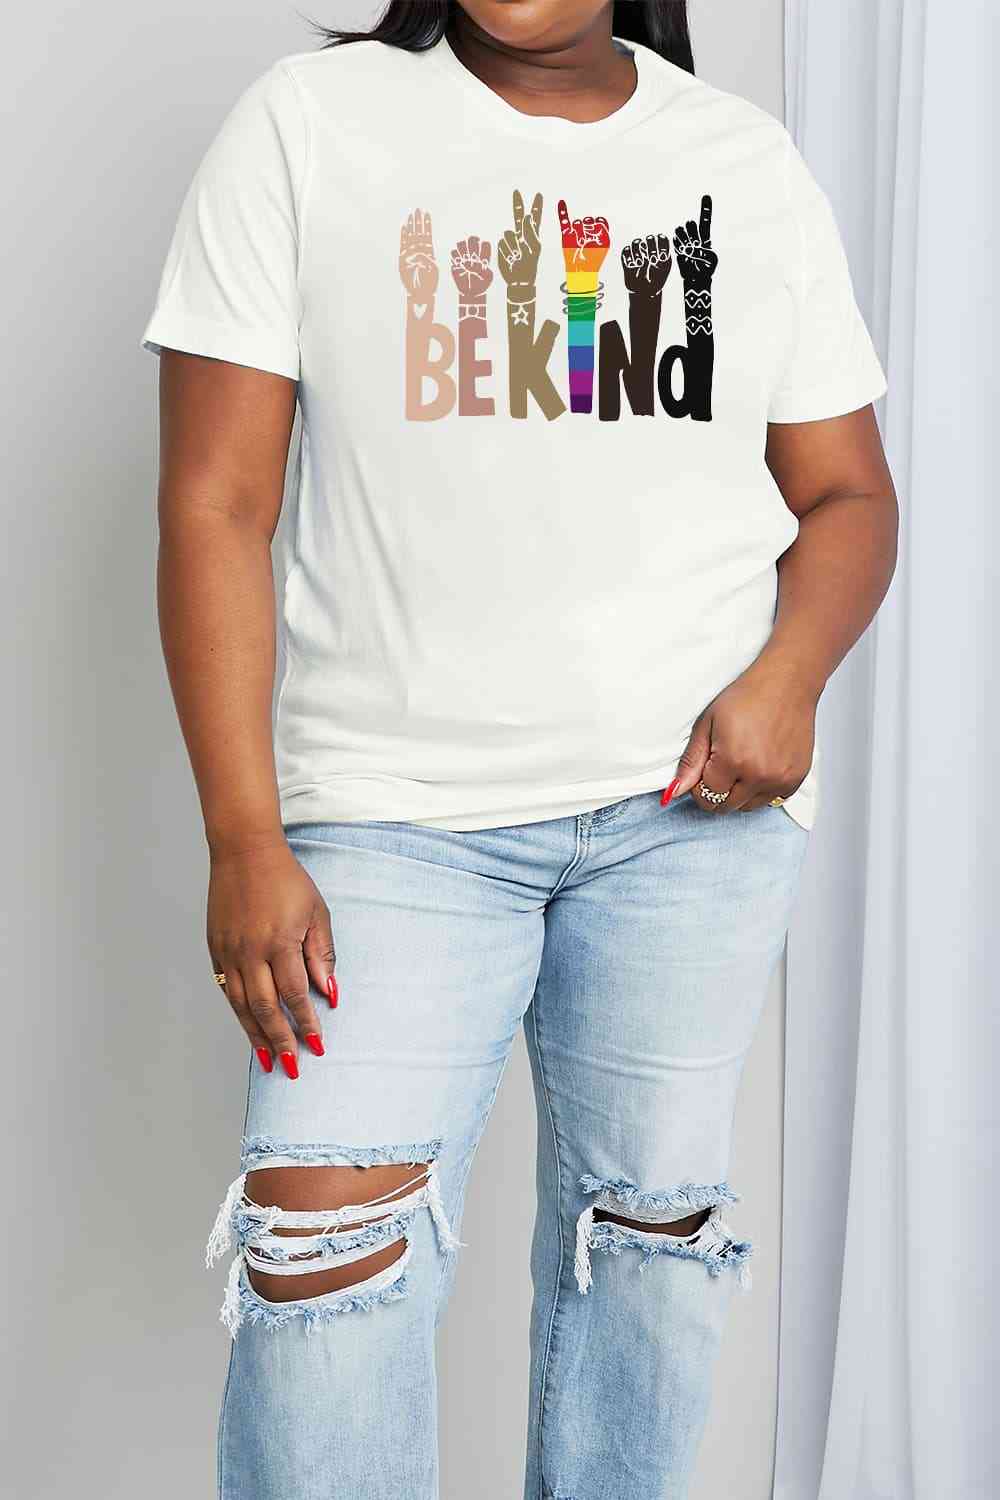 Camiseta de algodón con estampado BE KIND de tamaño completo de Simply Love